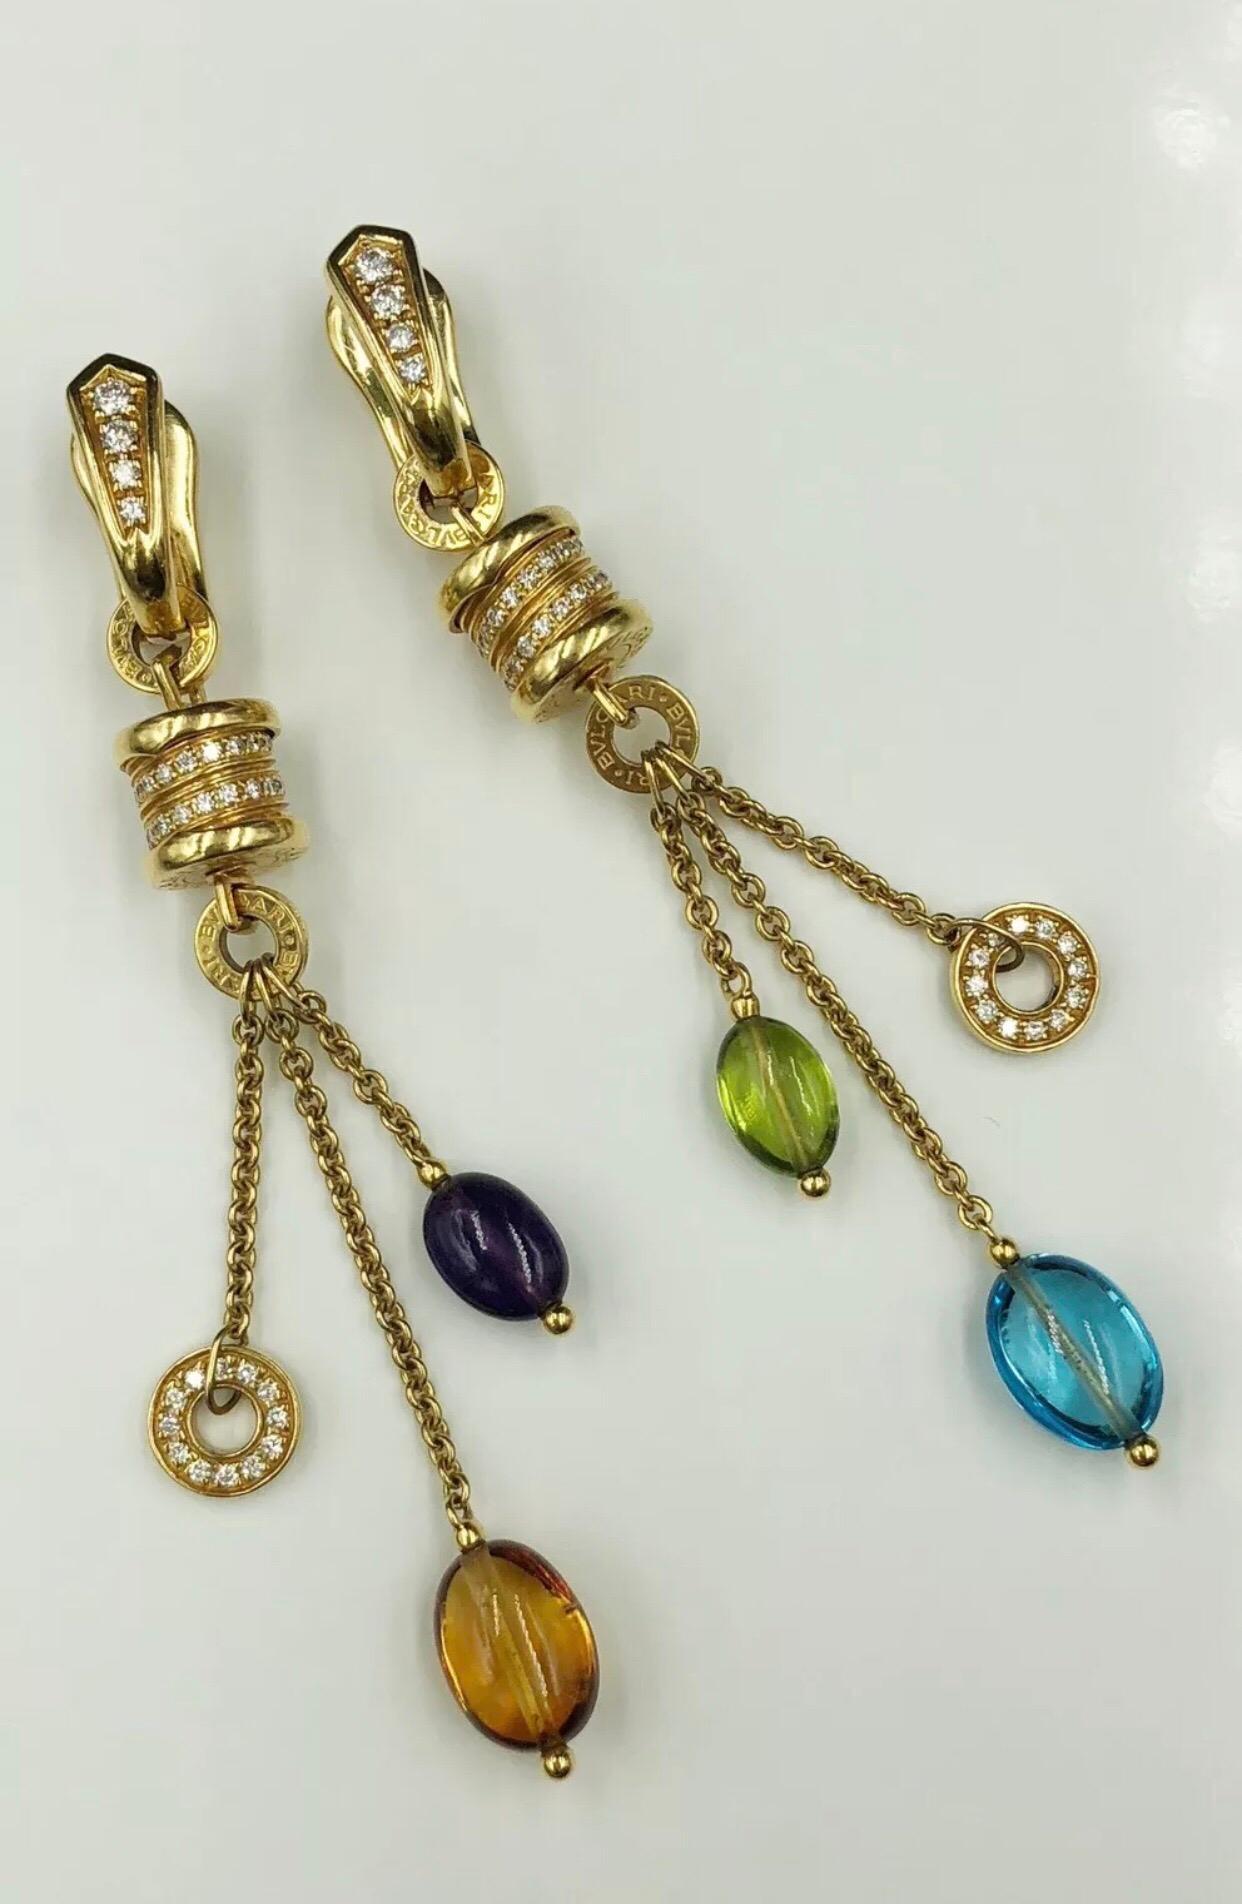 Bulgari B. Zero1 gemstone & diamond dangle earrings set in 18K Yellow Gold. 0.44 CTW in diamonds, topaz, citrine, peridot and tourmaline gemstones.